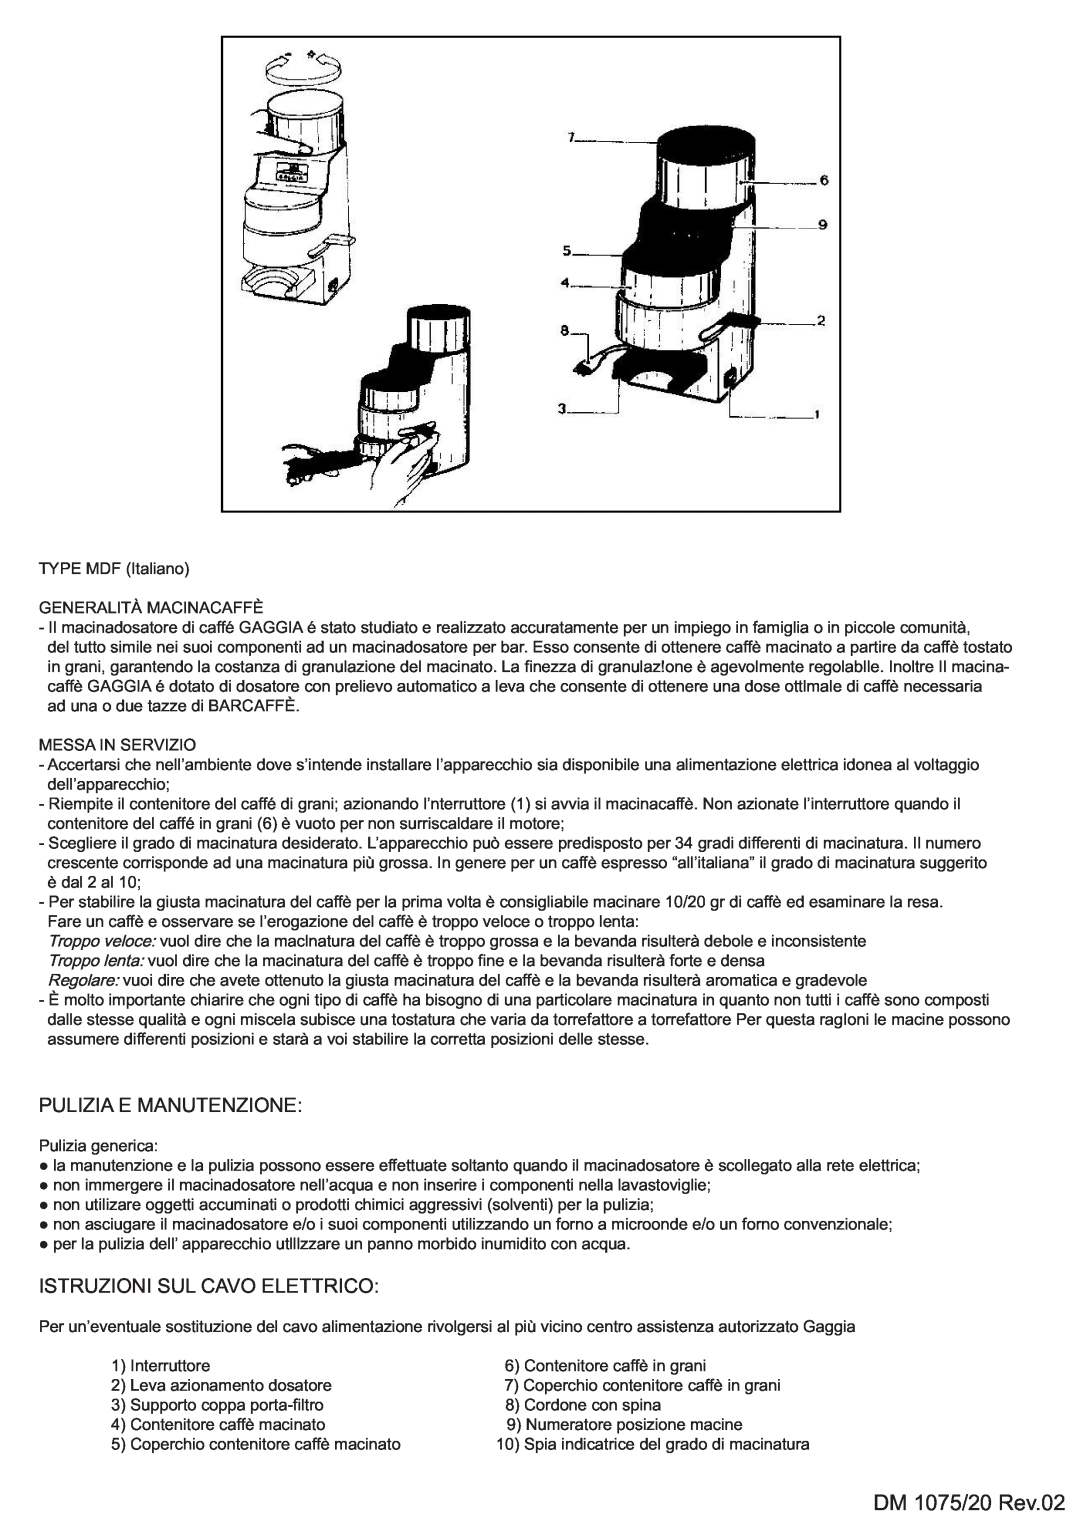 Gaggia MYUSA013, 8002 manual Pulizia E Manutenzione, Istruzioni Sul Cavo Elettrico, DM 1075/20 Rev.02 